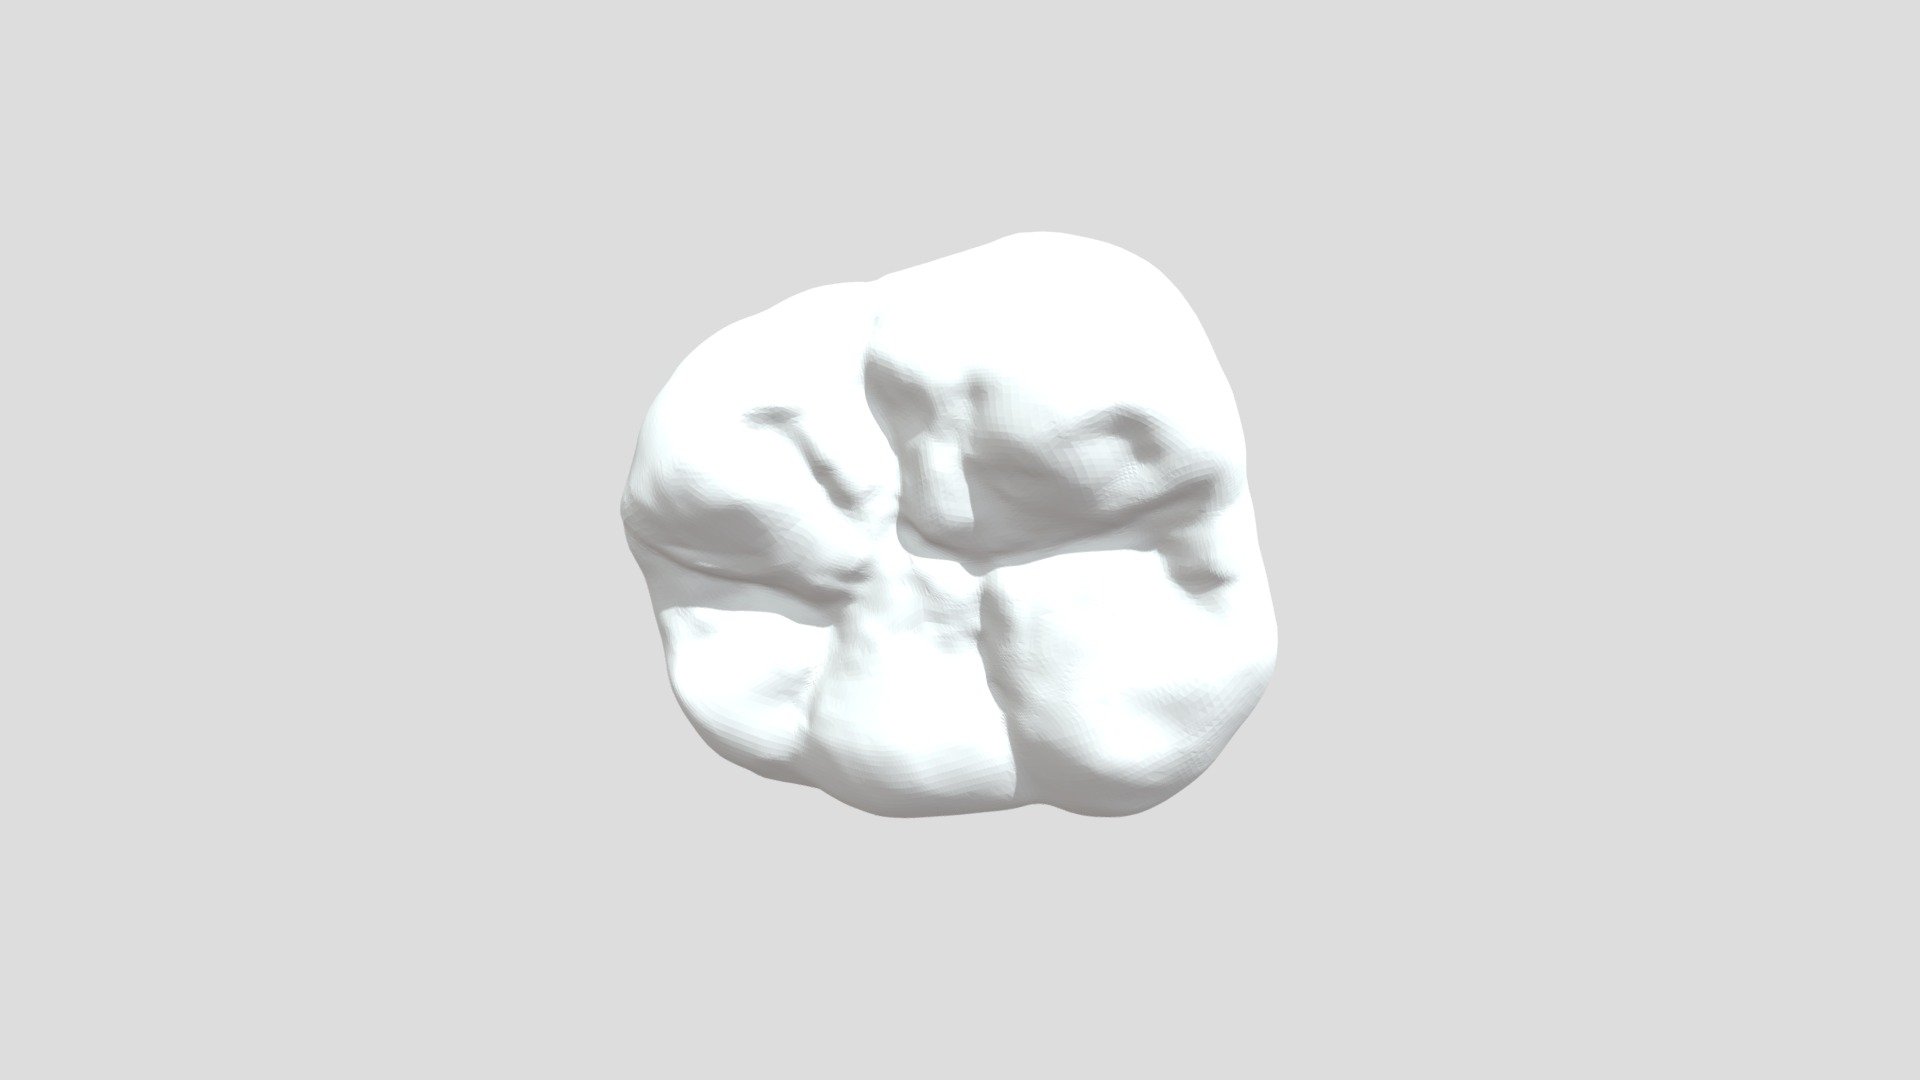 3D - 3D model by 3dm1 [09c76d7] - Sketchfab